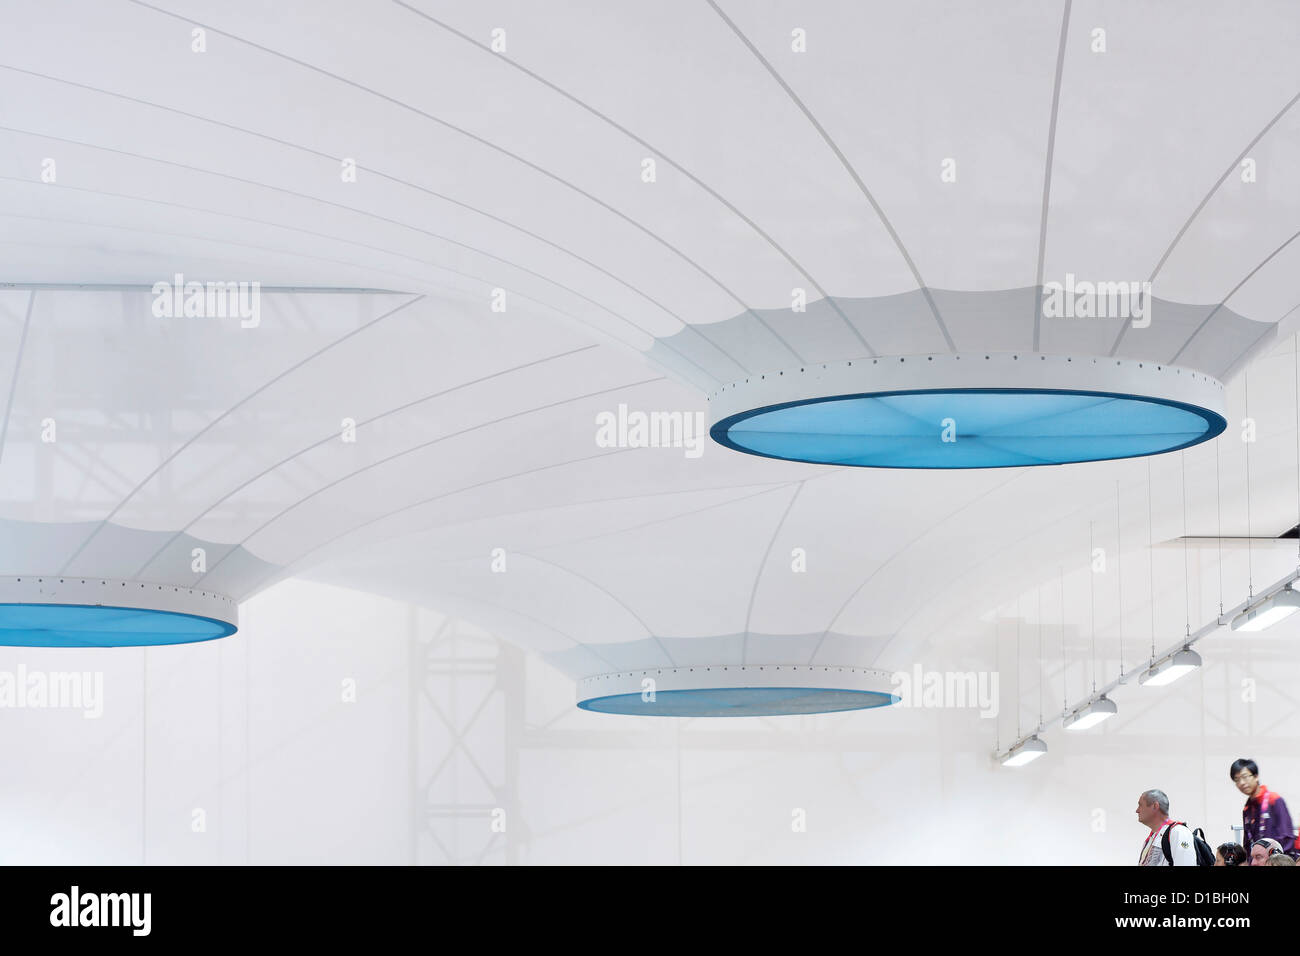 Tir Olympique, Londres, Royaume-Uni. Architecte : Architecture de Magma, 2012. Détail de la tente semi-translucides str Banque D'Images